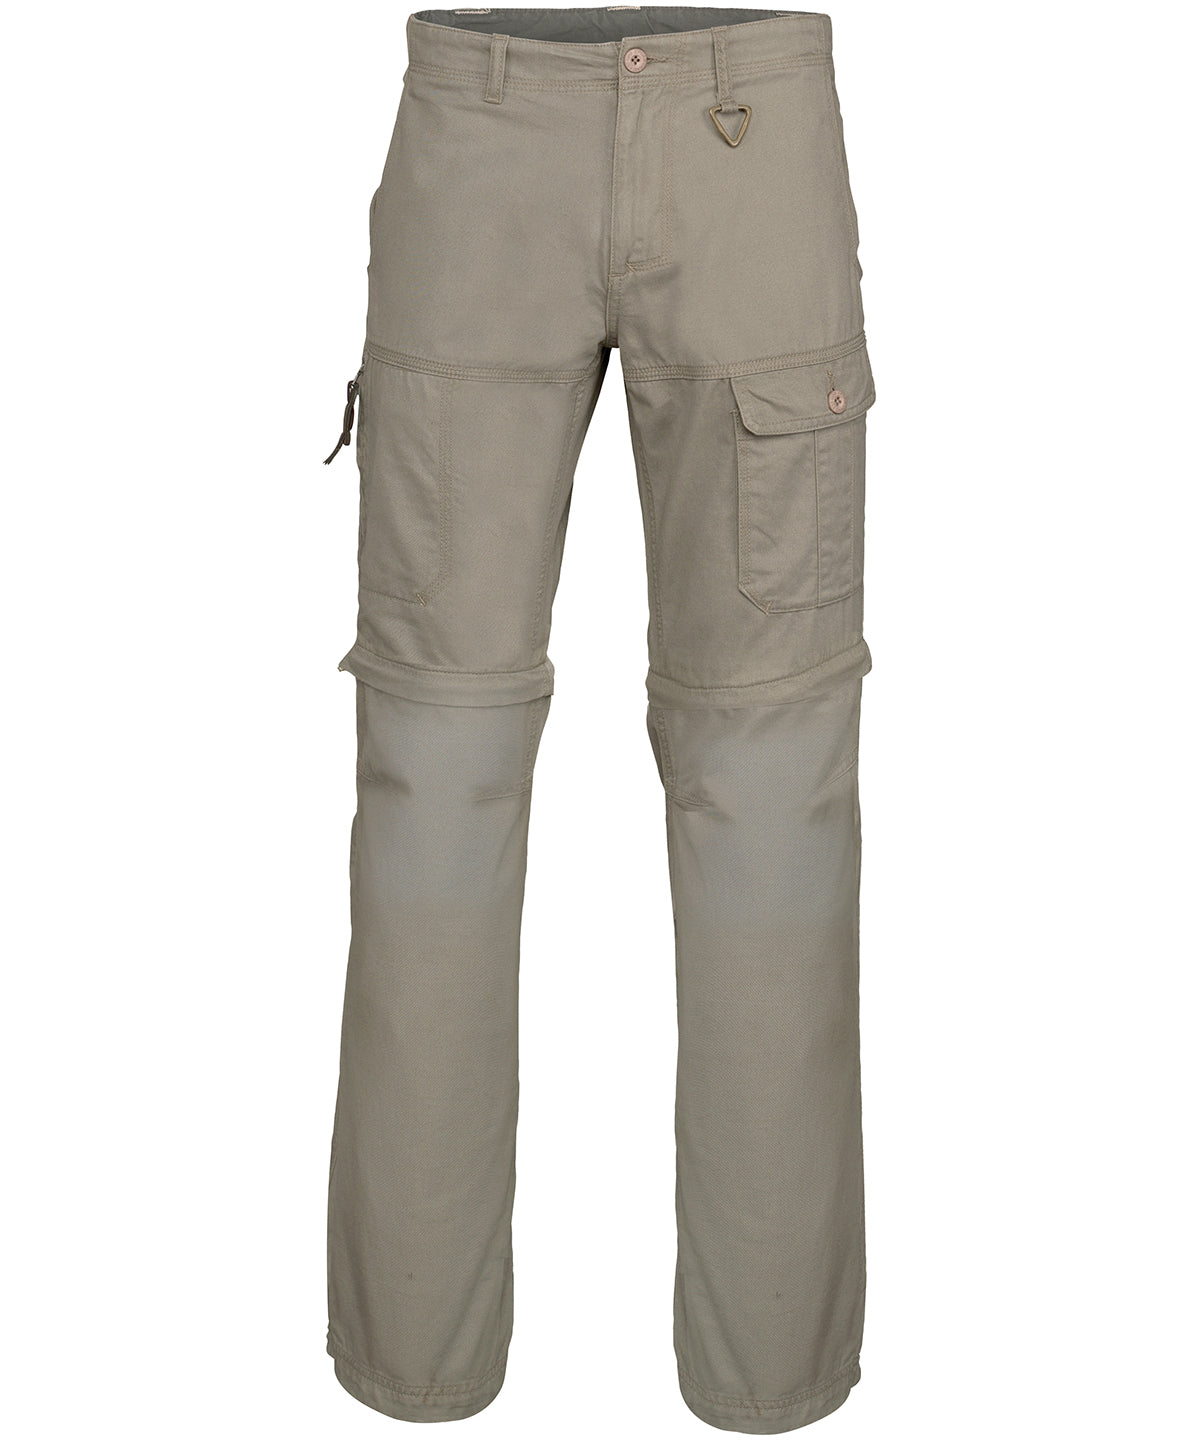 Personalised Trousers - Black Kariban 2-in-1 multi-pocket trousers